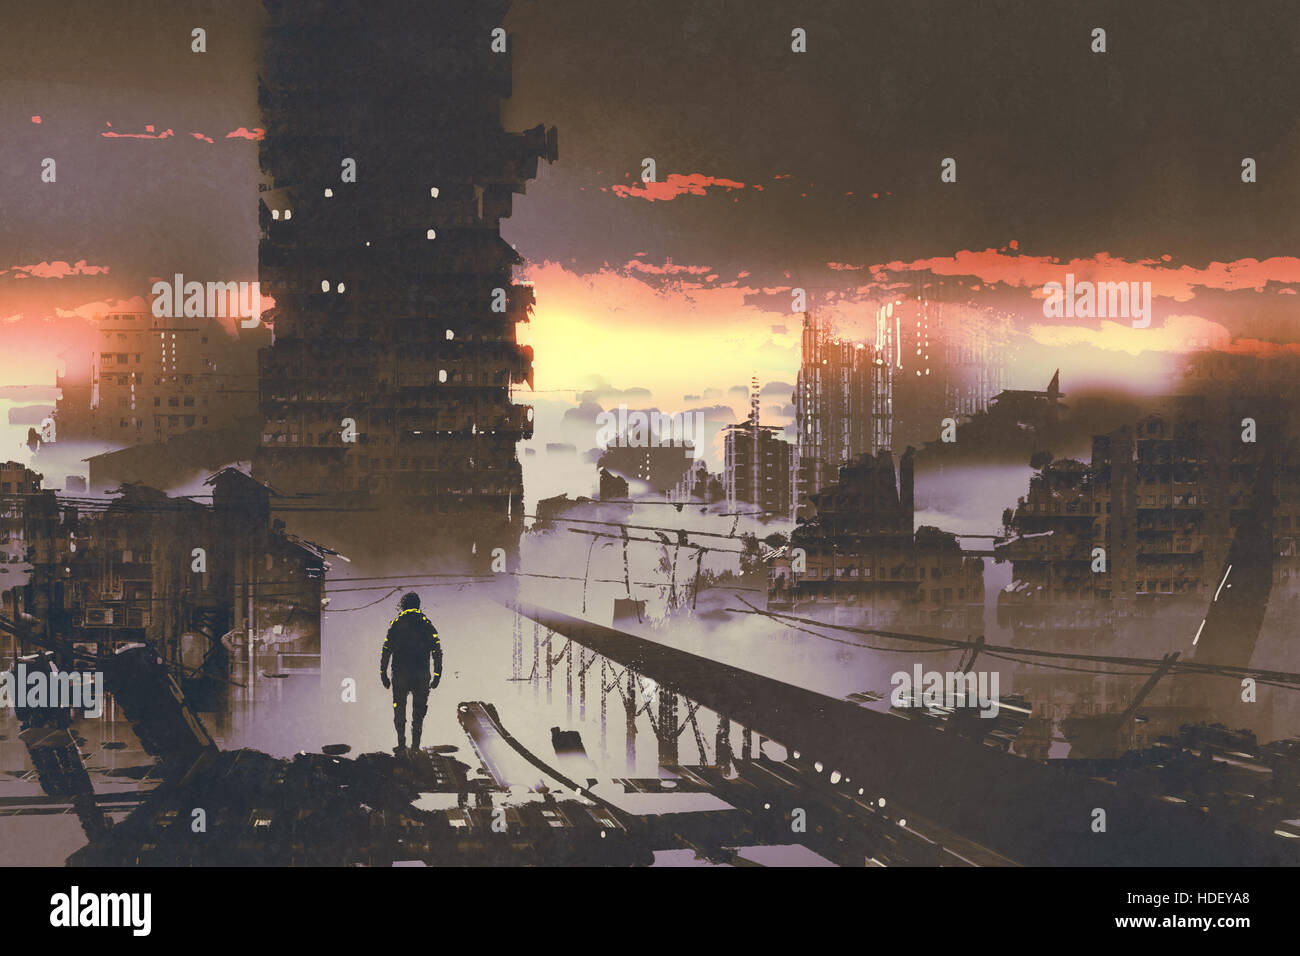 Uomo in piedi in città abbandonate,sci-fi concetto,illustrazione pittura Foto Stock